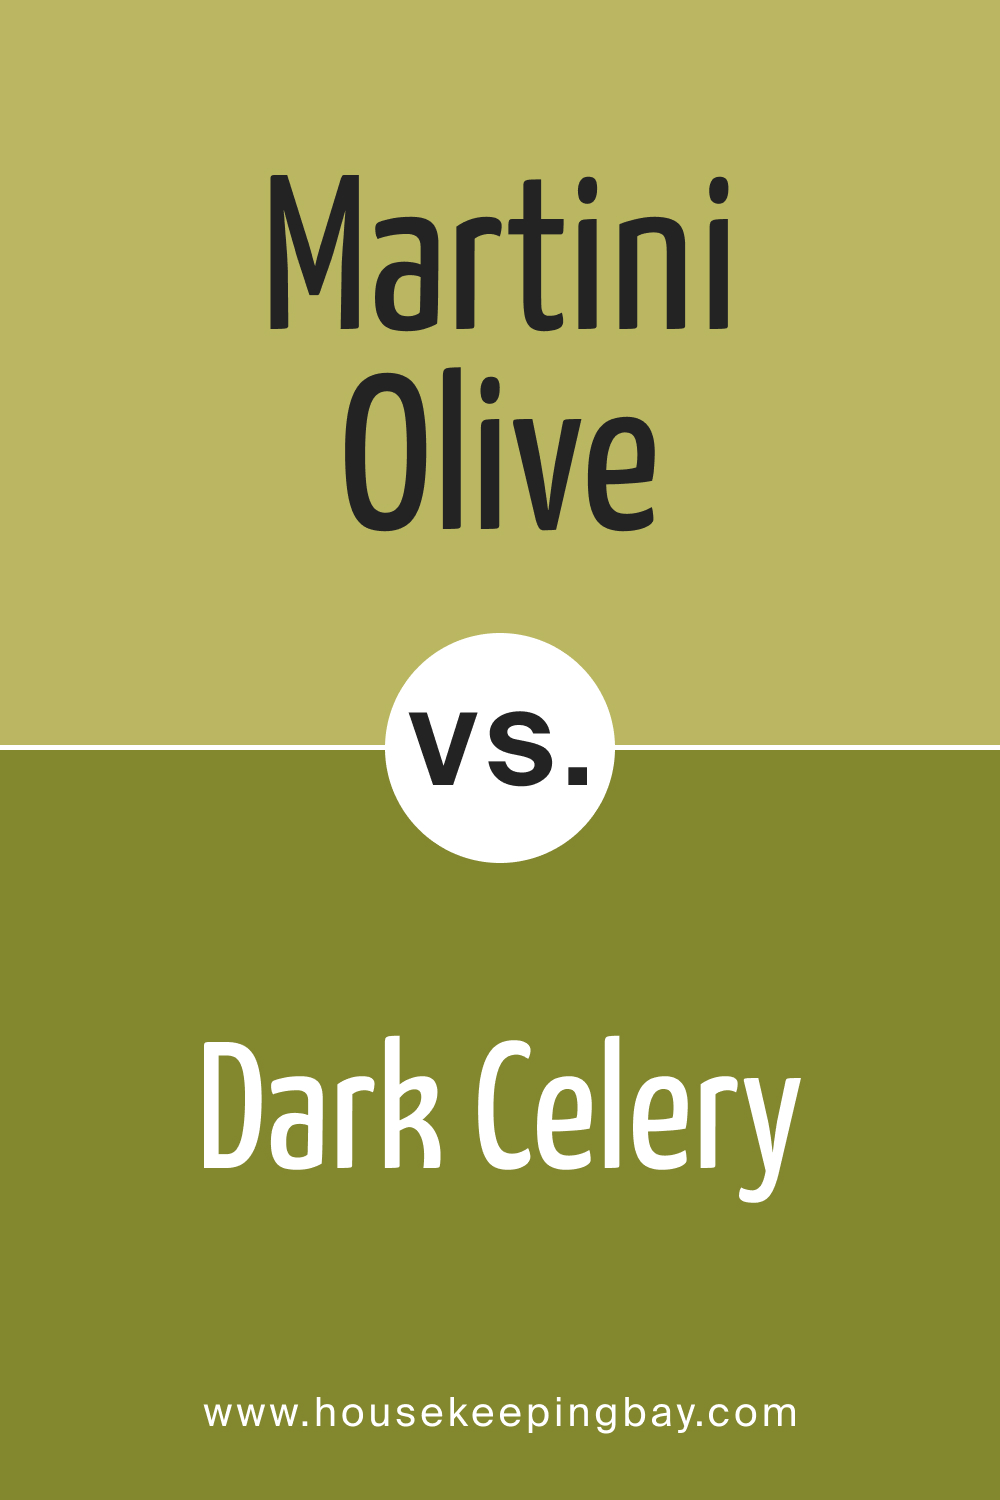 Martini Olive CSP-890 vs. BM 2146-10 Dark Celery